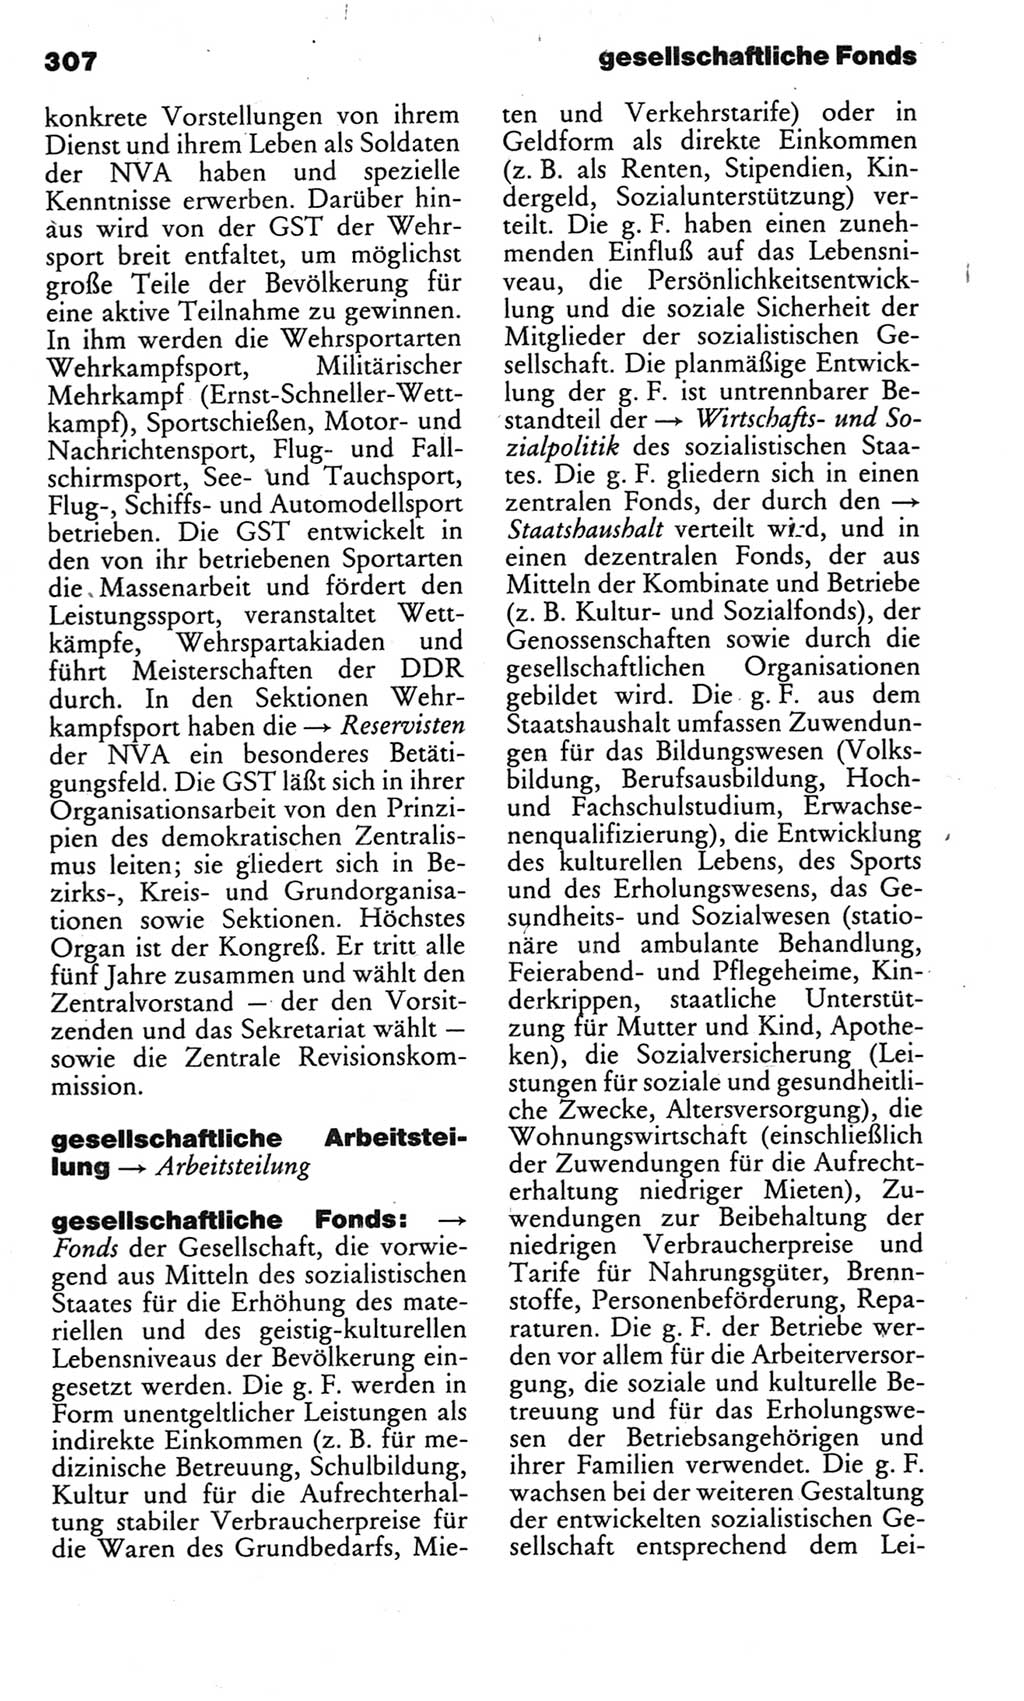 Kleines politisches Wörterbuch [Deutsche Demokratische Republik (DDR)] 1983, Seite 307 (Kl. pol. Wb. DDR 1983, S. 307)